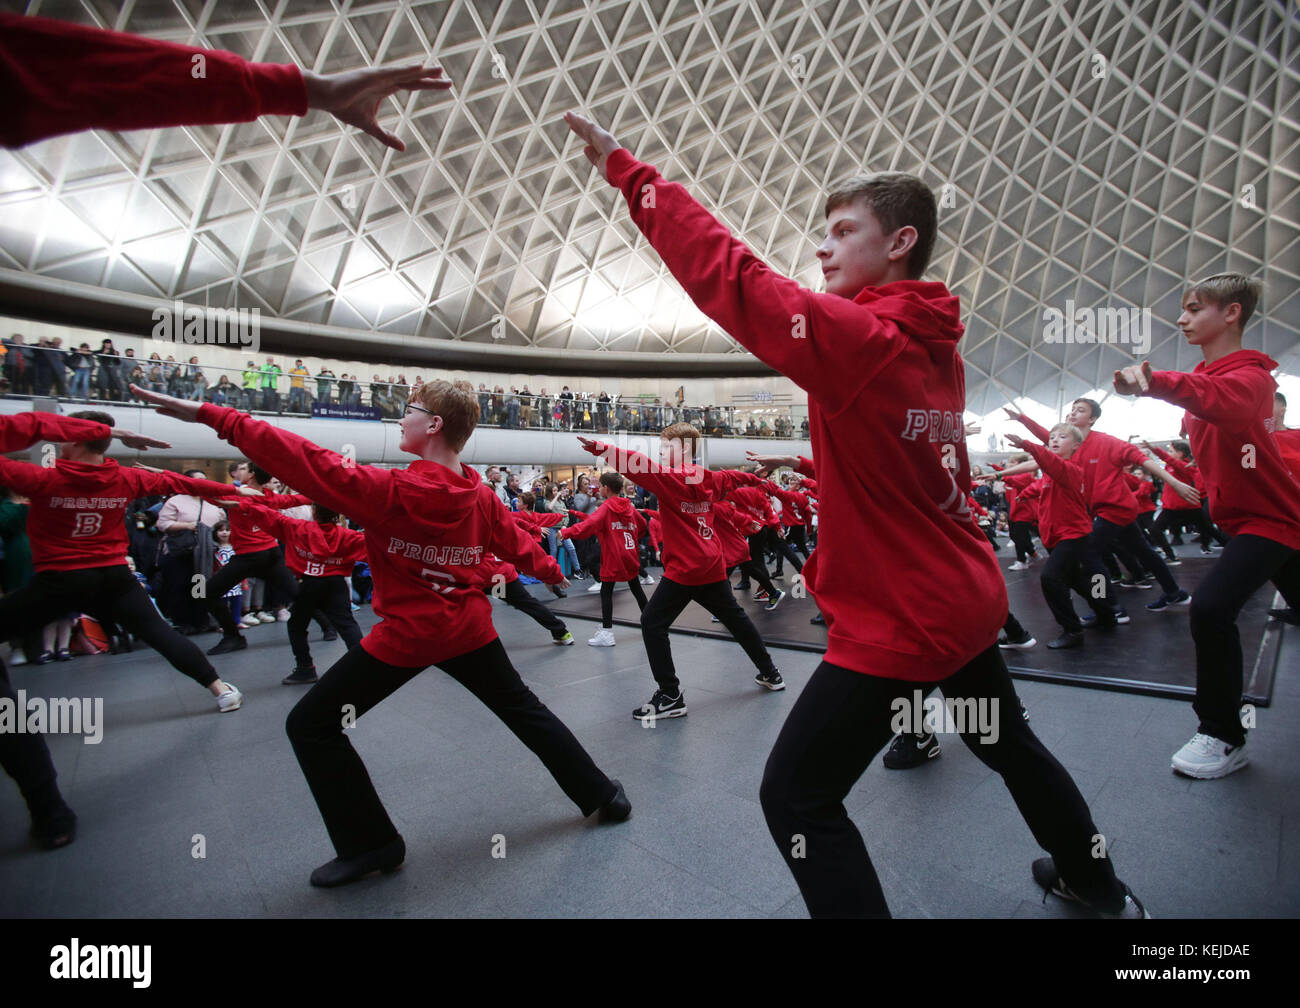 Des artistes masculins amateurs et professionnels âgés de 6-12 à 24 ans participent à une foule éclair organisée dans le cadre du projet B de l'Académie royale de danse pour encourager davantage de garçons à essayer le ballet, à la gare de King's Cross, à Londres. Banque D'Images